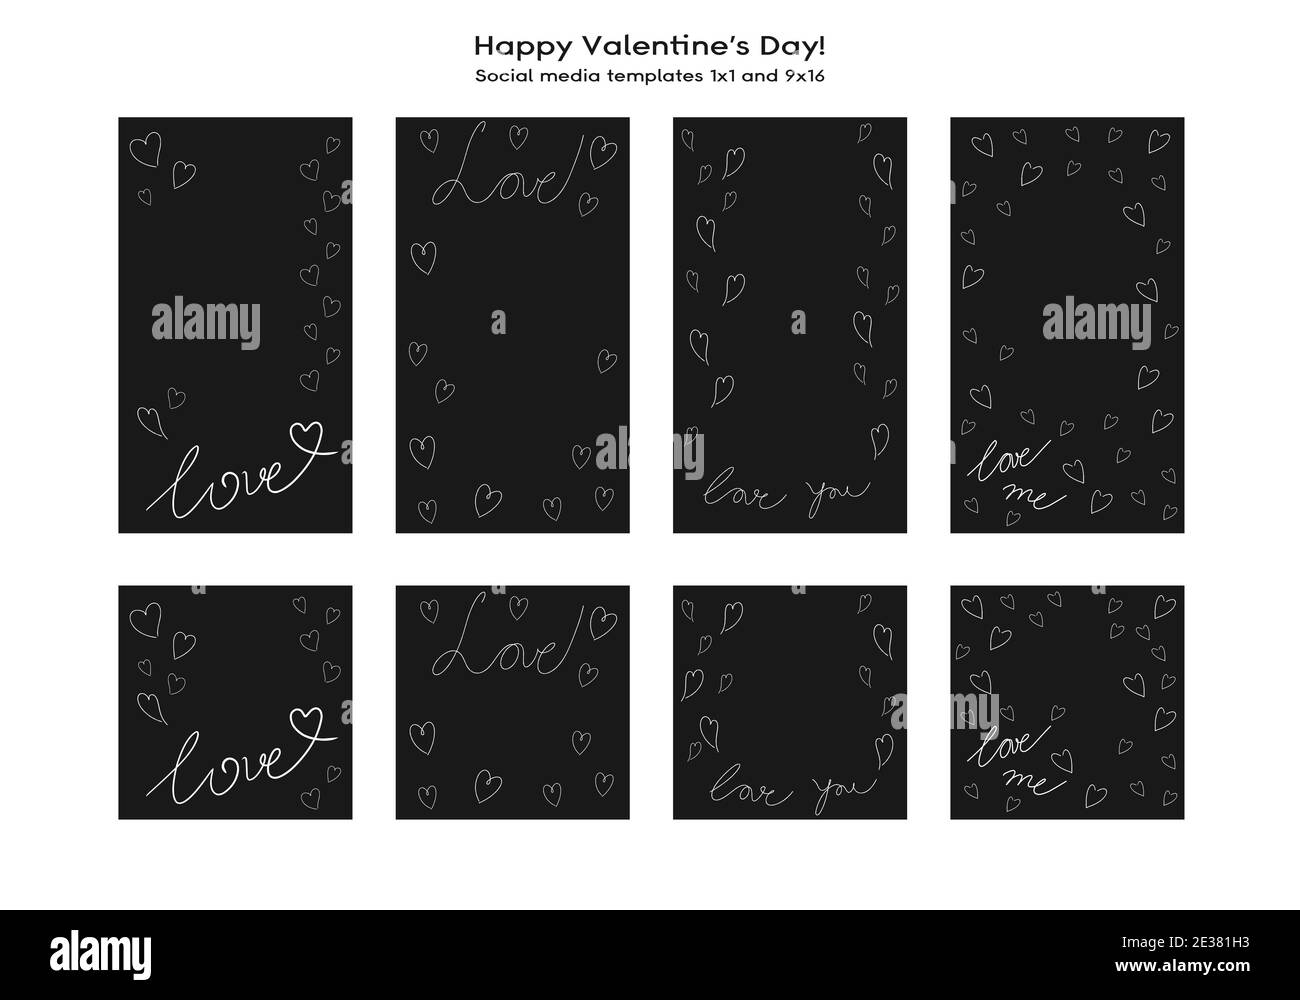 Liebe Valentinstag Social Media handgezeichnete Vorlage. Editierbarer quadratischer Postrahmen mit Kopierraum. Handgezeichnetes einfaches minimalistisches Design, trendige Doodle-Linien Stock Vektor